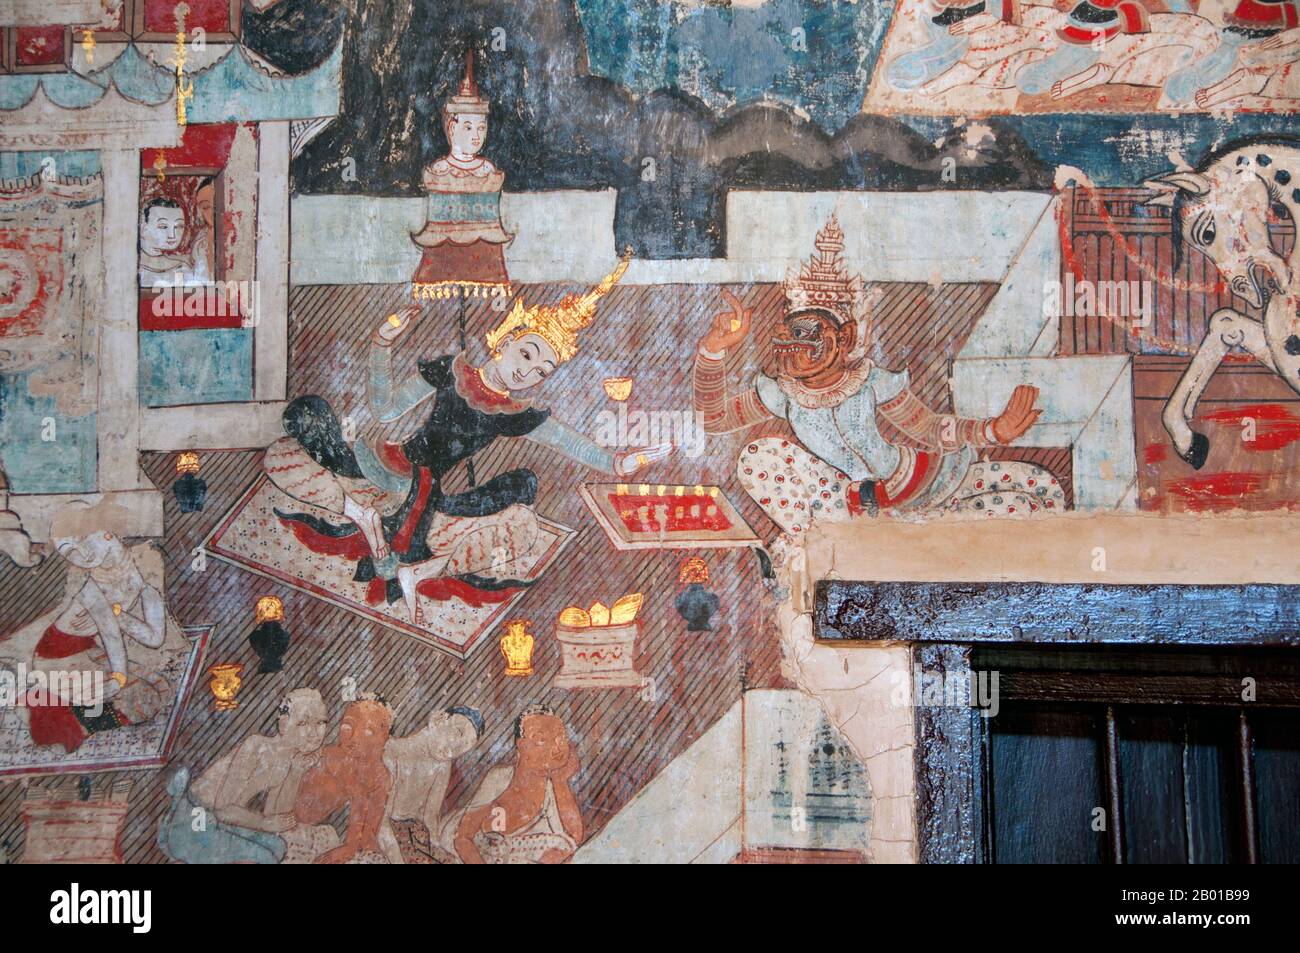 Thailand: Prinz Siddhartha und ein Dämon spielen Schach in einem Wandbild im Wat Buak Khrok Luang, Chiang Mai. Siddhartha Gautama war eine spirituelle Lehrerin aus dem alten Indien, die den Buddhismus gründete. Der Zeitpunkt seiner Geburt und Tod sind ungewiss: Die meisten frühen 20.-Jahrhundert-Historiker datierten sein Leben als c. 563 BCE bis 483 BCE, aber neuere Meinung datiert seinen Tod auf zwischen 486 und 483 BCE oder, nach einigen, zwischen 411 und 400 BCE. Wat Buak Khrok Luang, befindet sich in Ban Buak Khrok Luang Moo 1, Chiang Mai – Sankamphaeng Road, Chiang Mai, ist ein kleiner und typisch nordthailändischer buddhistischer Tempel. Stockfoto